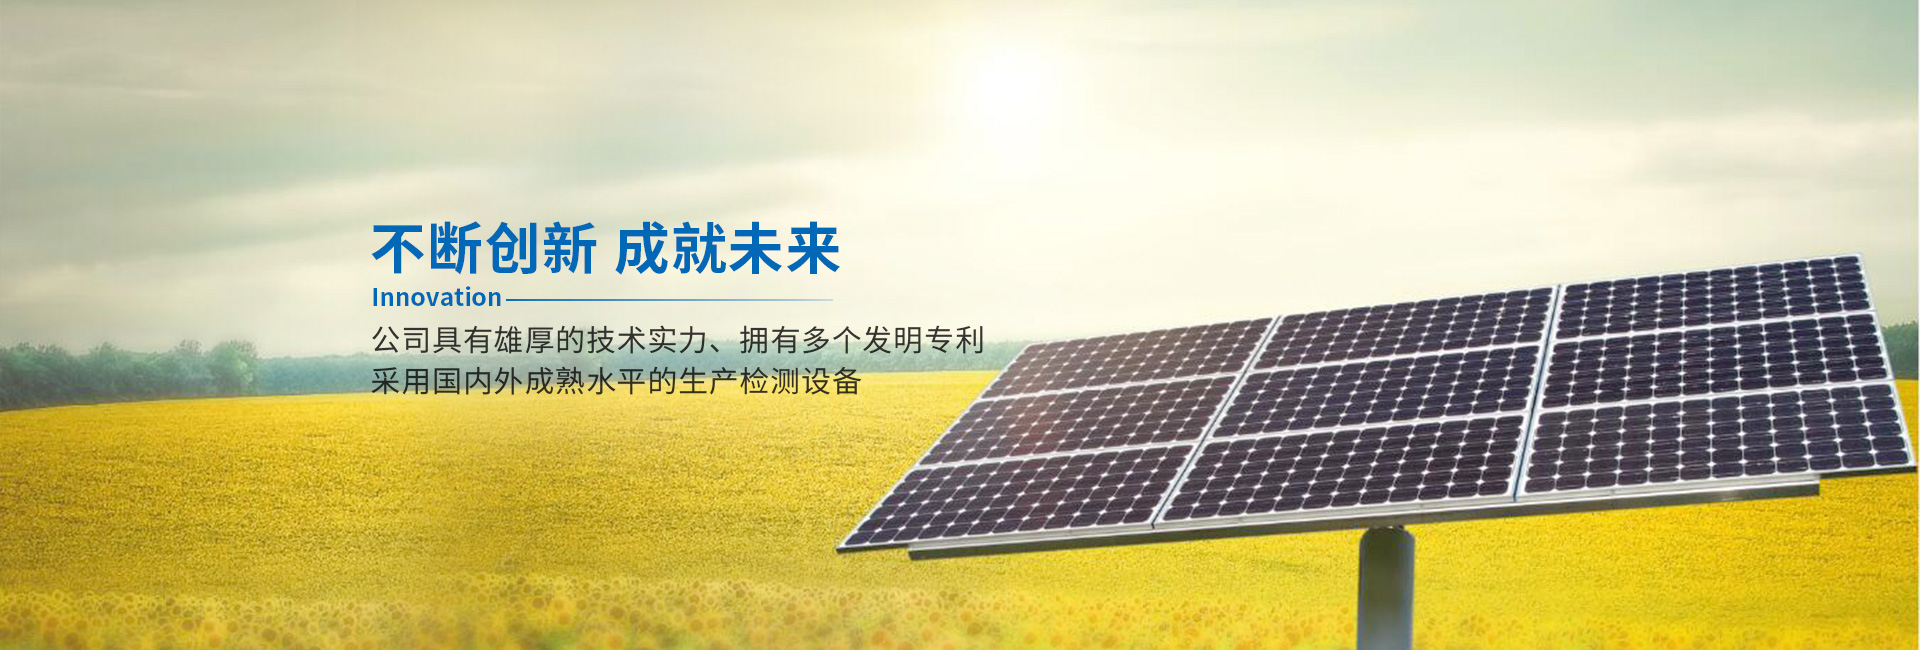 蘇州博望新能源科技有限公司